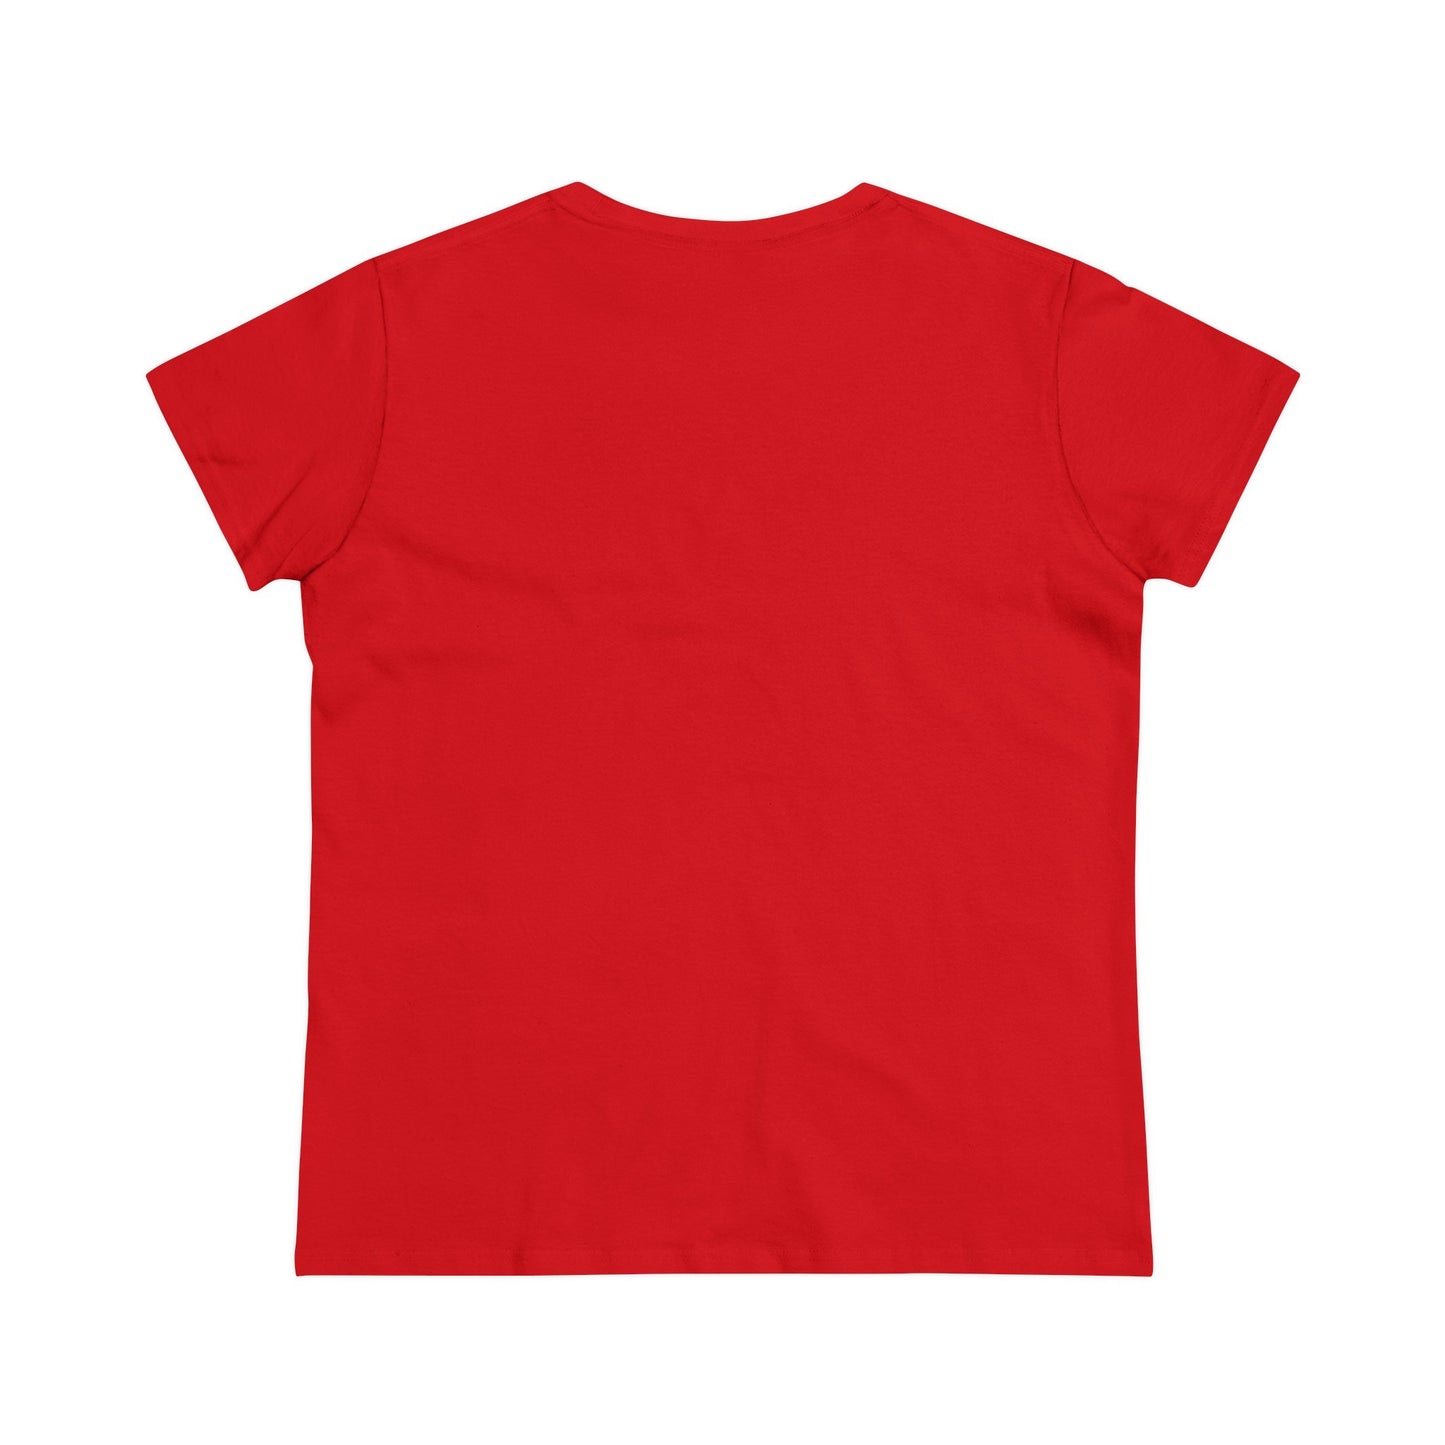 Halb tailliertes Damen-T-Shirt mit Ferrari-Logo – klassischer Stil – 100 % Baumwolle – vorgeschrumpft